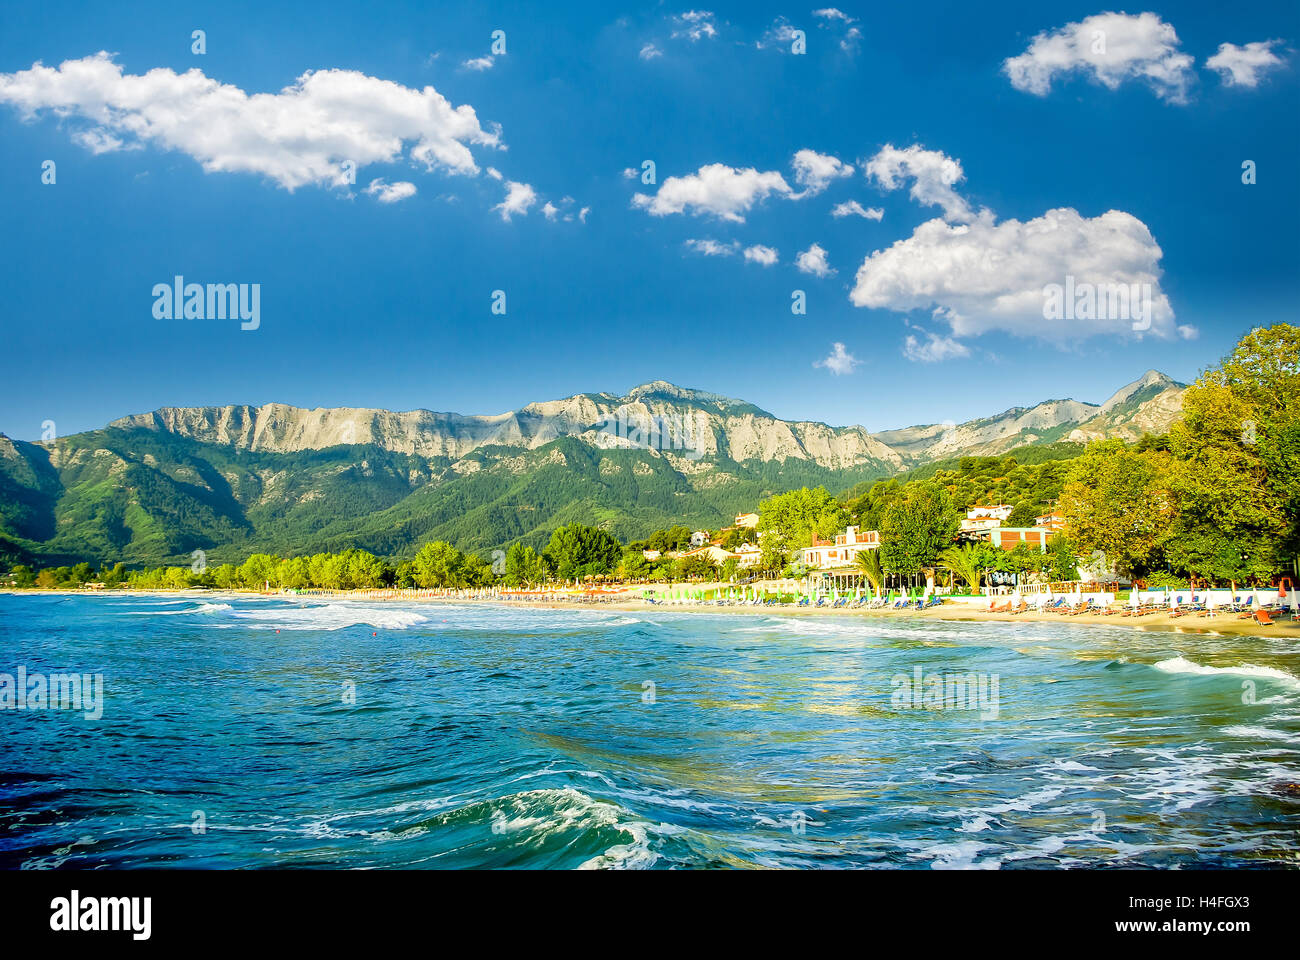 Psili Ammos Strand, Insel Thassos, Griechenland. Es bekannt als Goldstrand. Es liegt zwischen Skala Panagia und Skala Potamia. Stockfoto